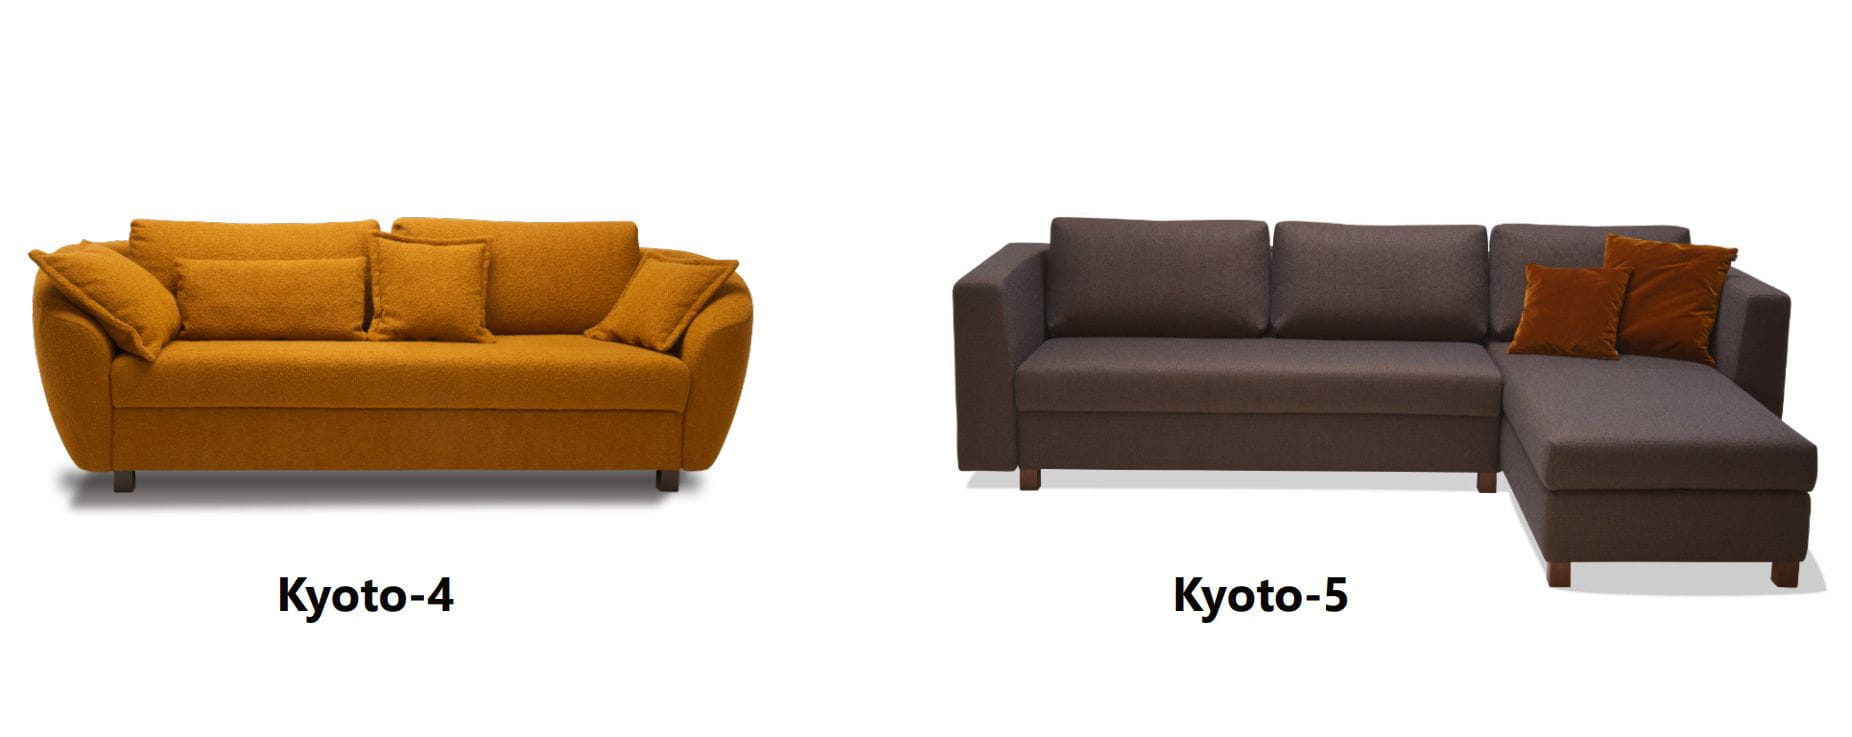 Signet Kyoto-4 und Kyoto-5 Schlafsofas